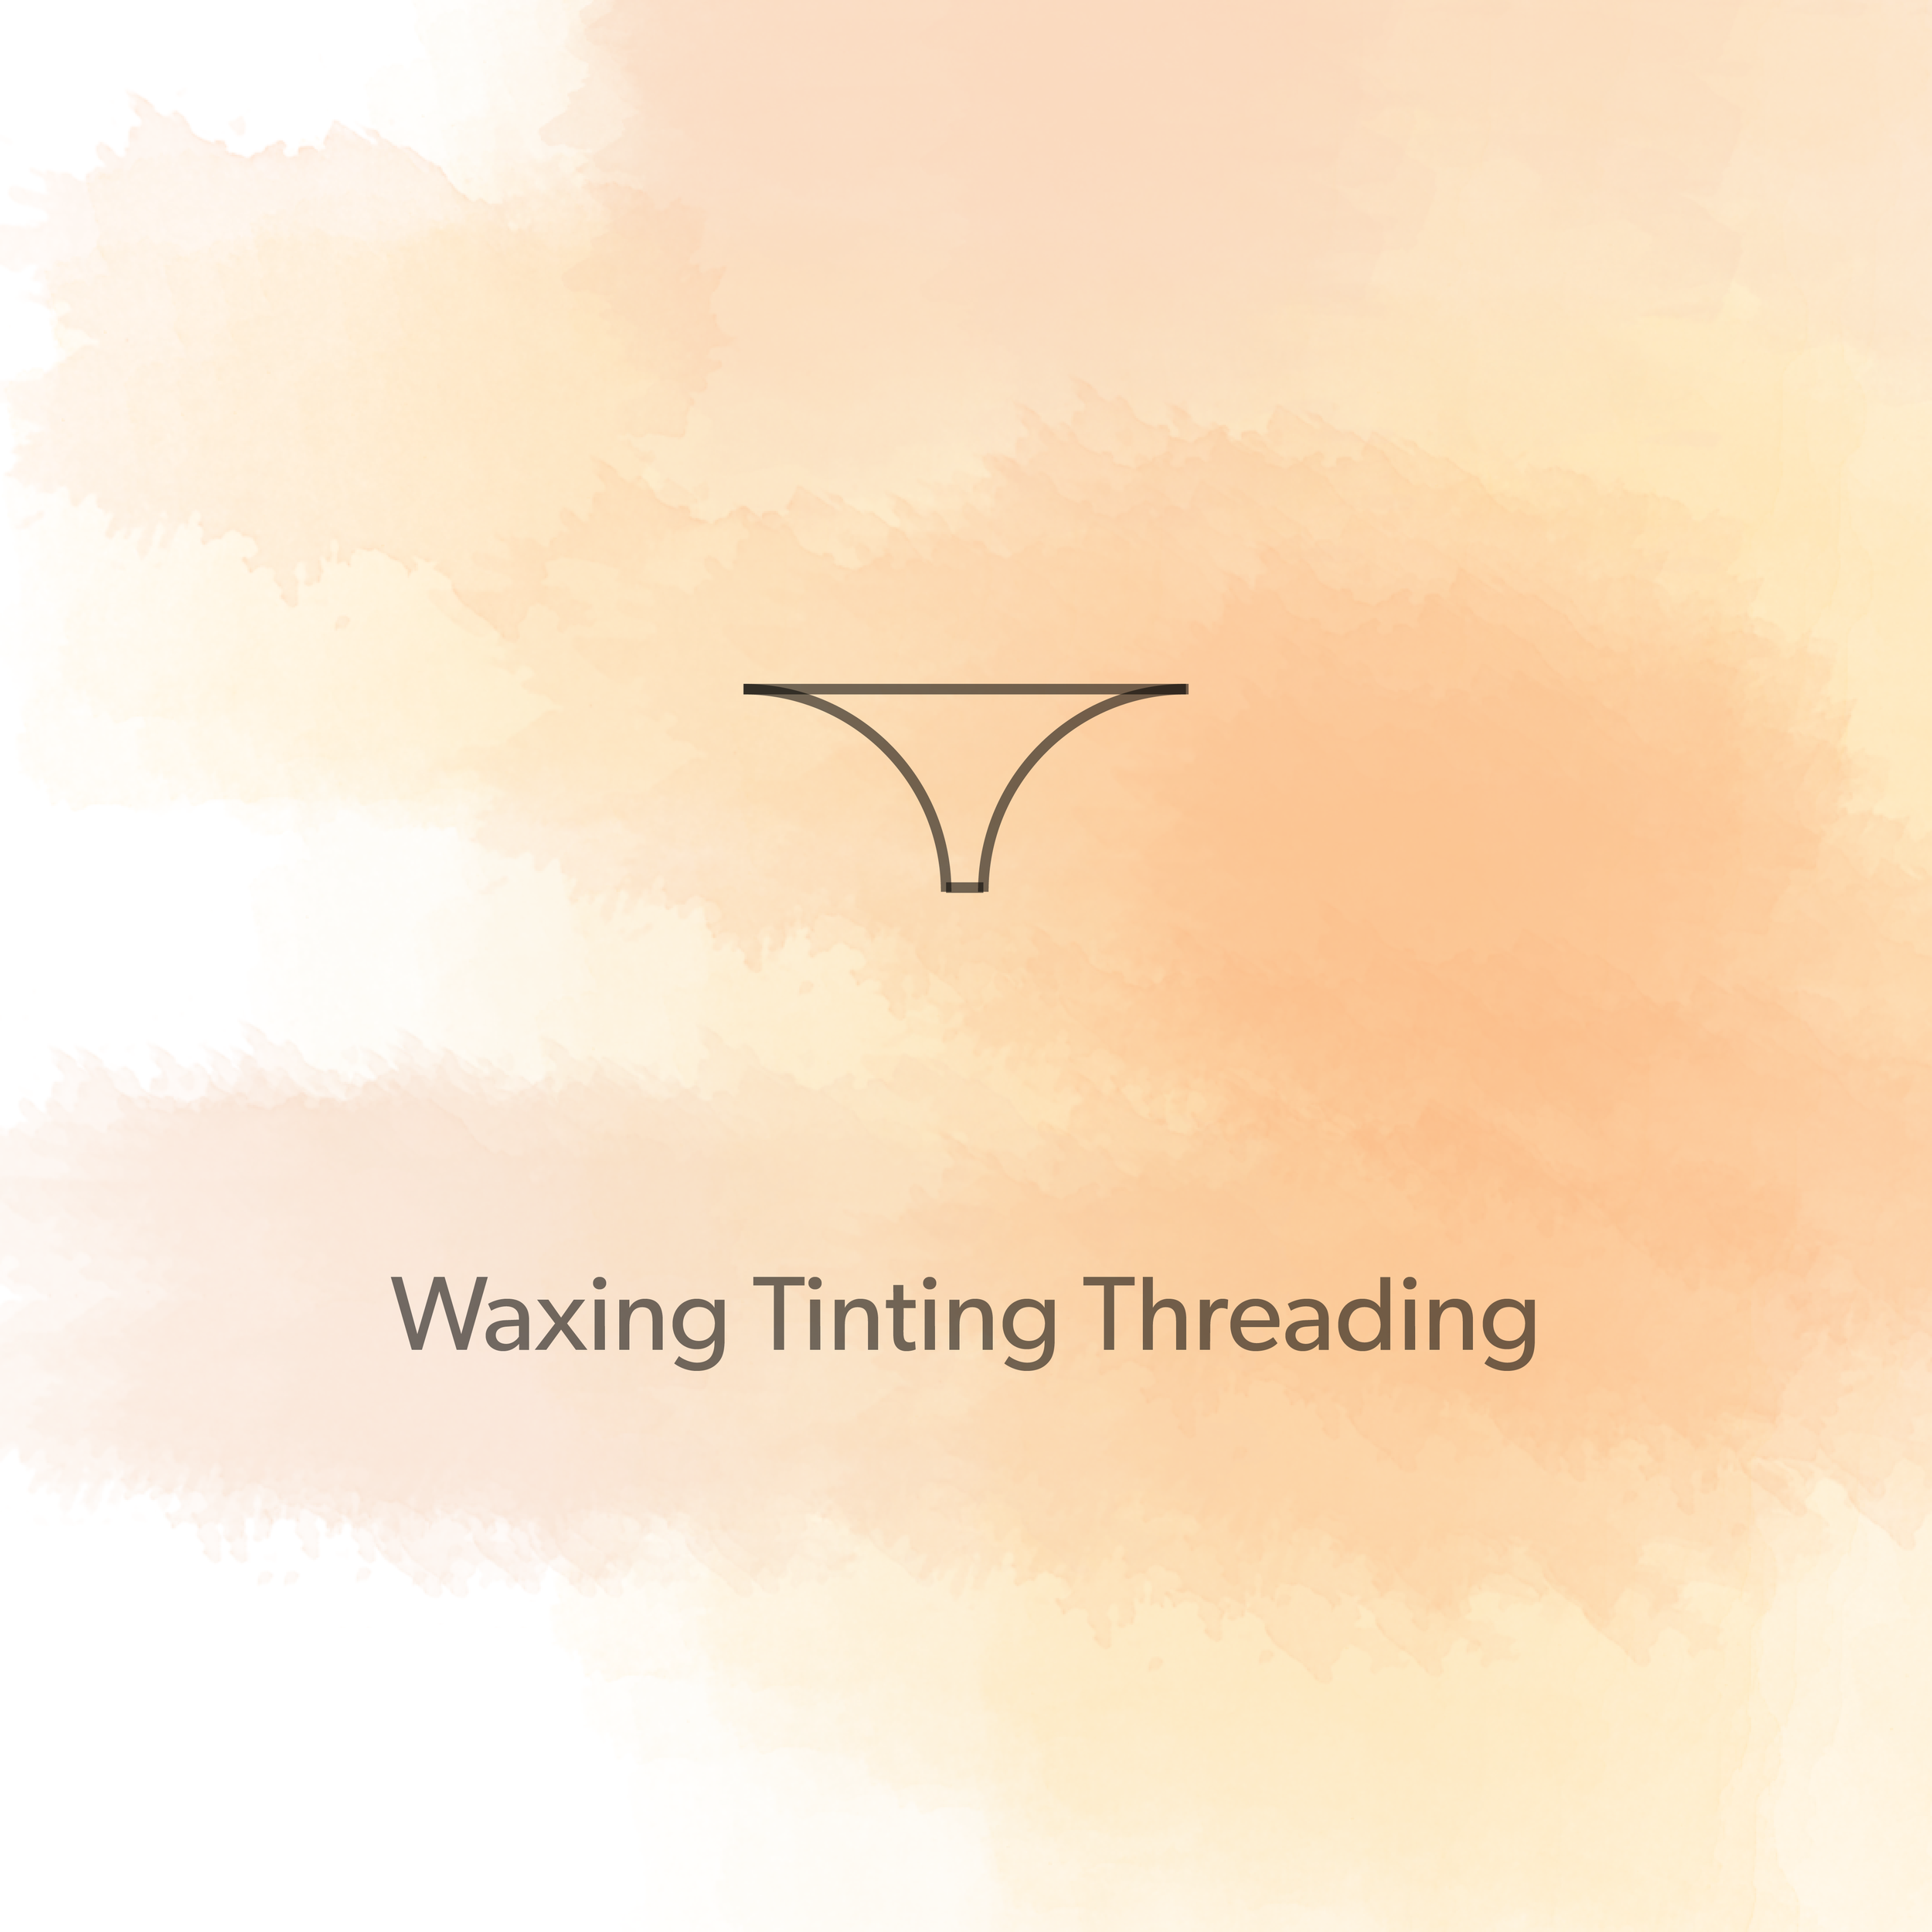 Waxing Tinting Threading